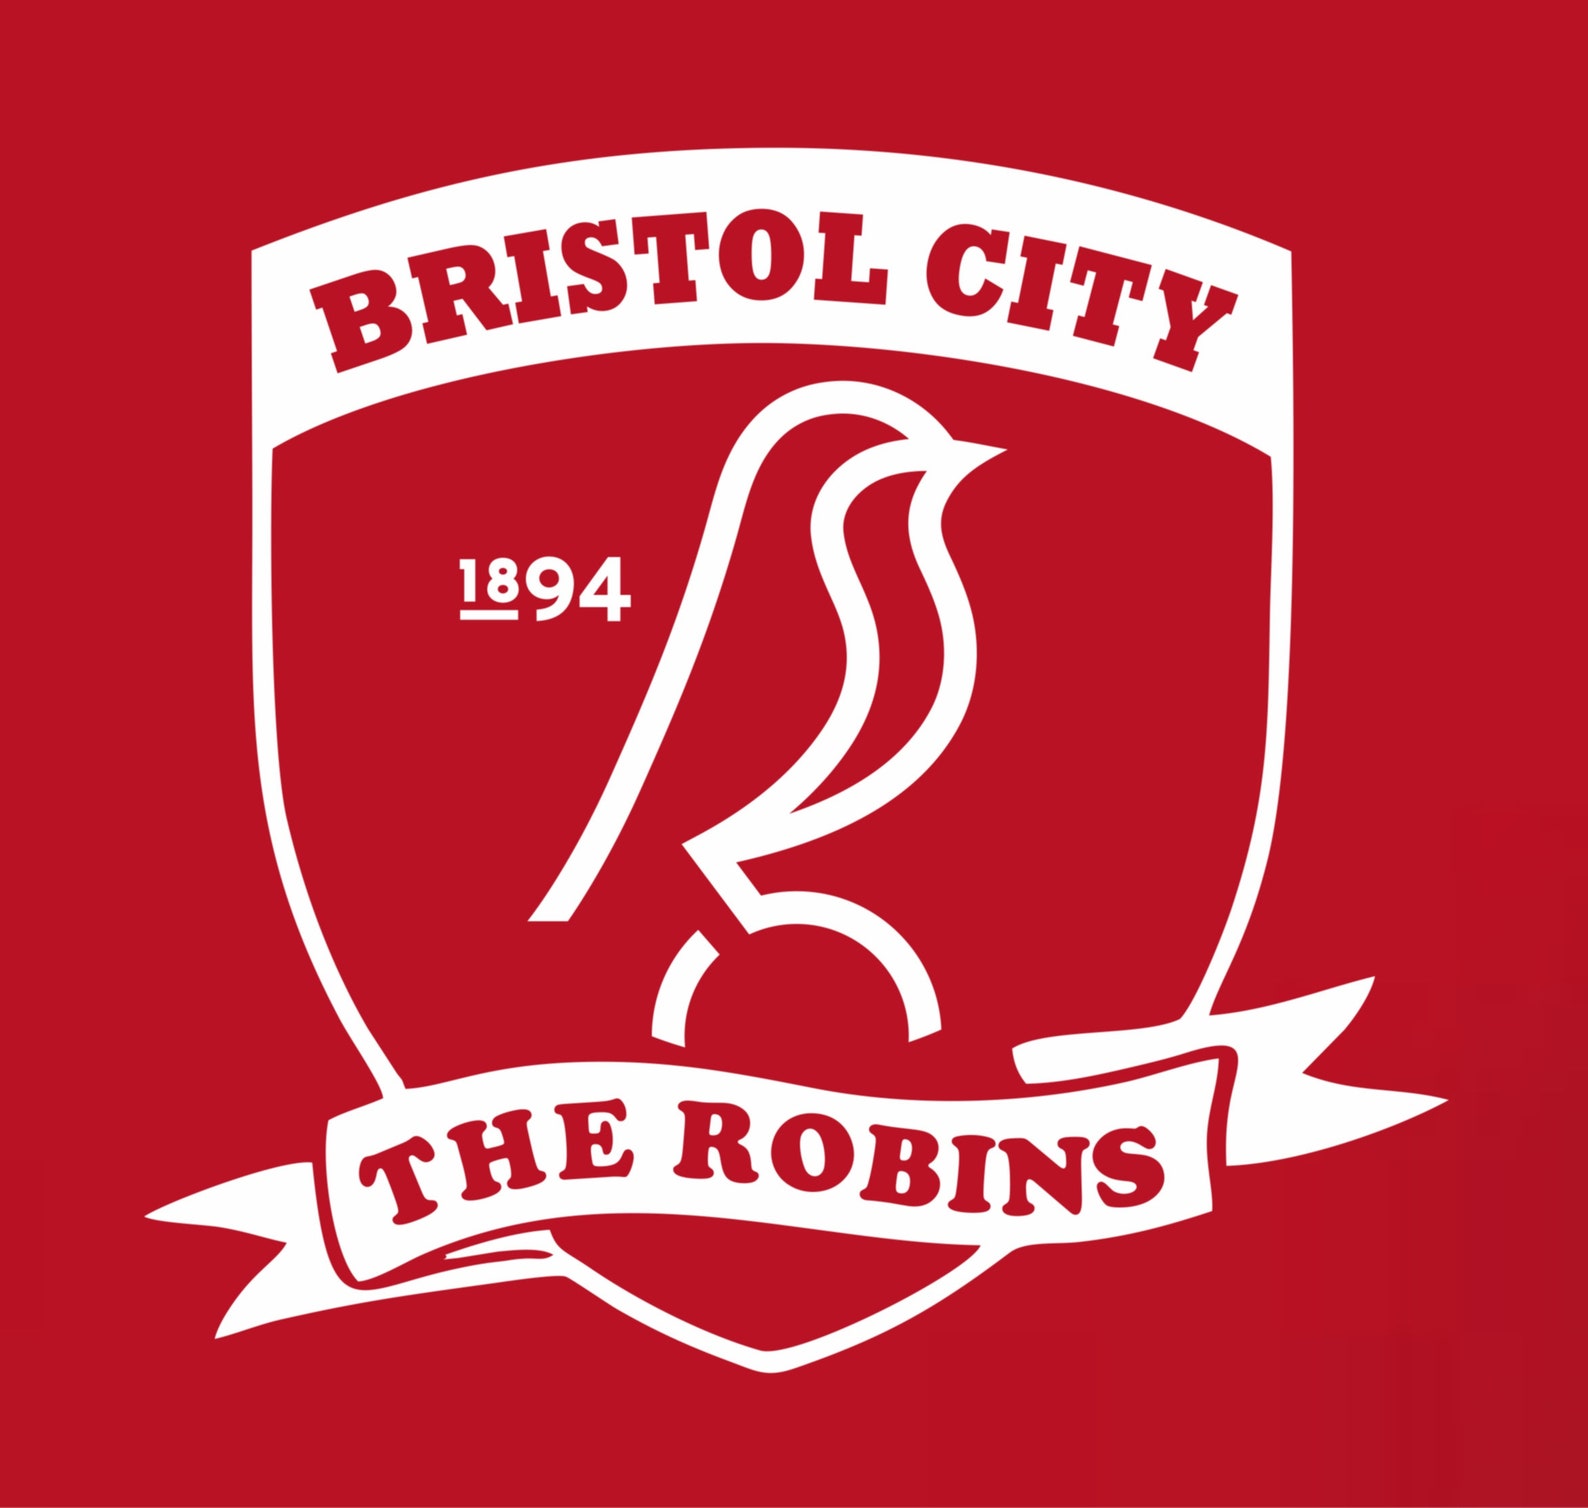 NEW Bristol City FC The Robins Retro Football Club T-shirt. | Etsy